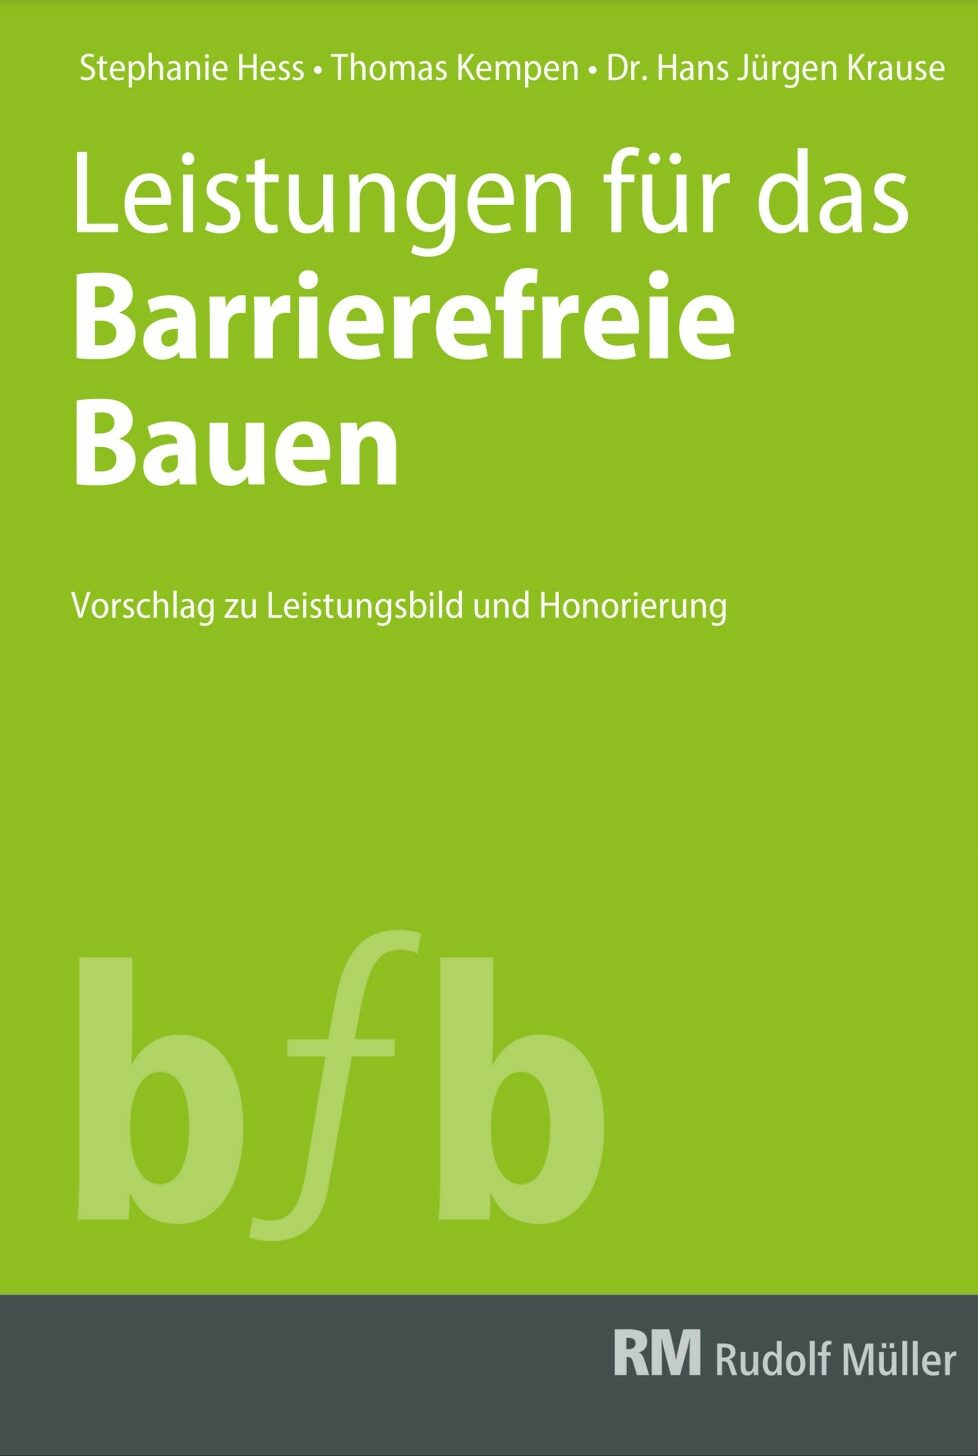 Titelbild des Buches Leistungen für das barrierefreie bauen über angemessene Honorierung